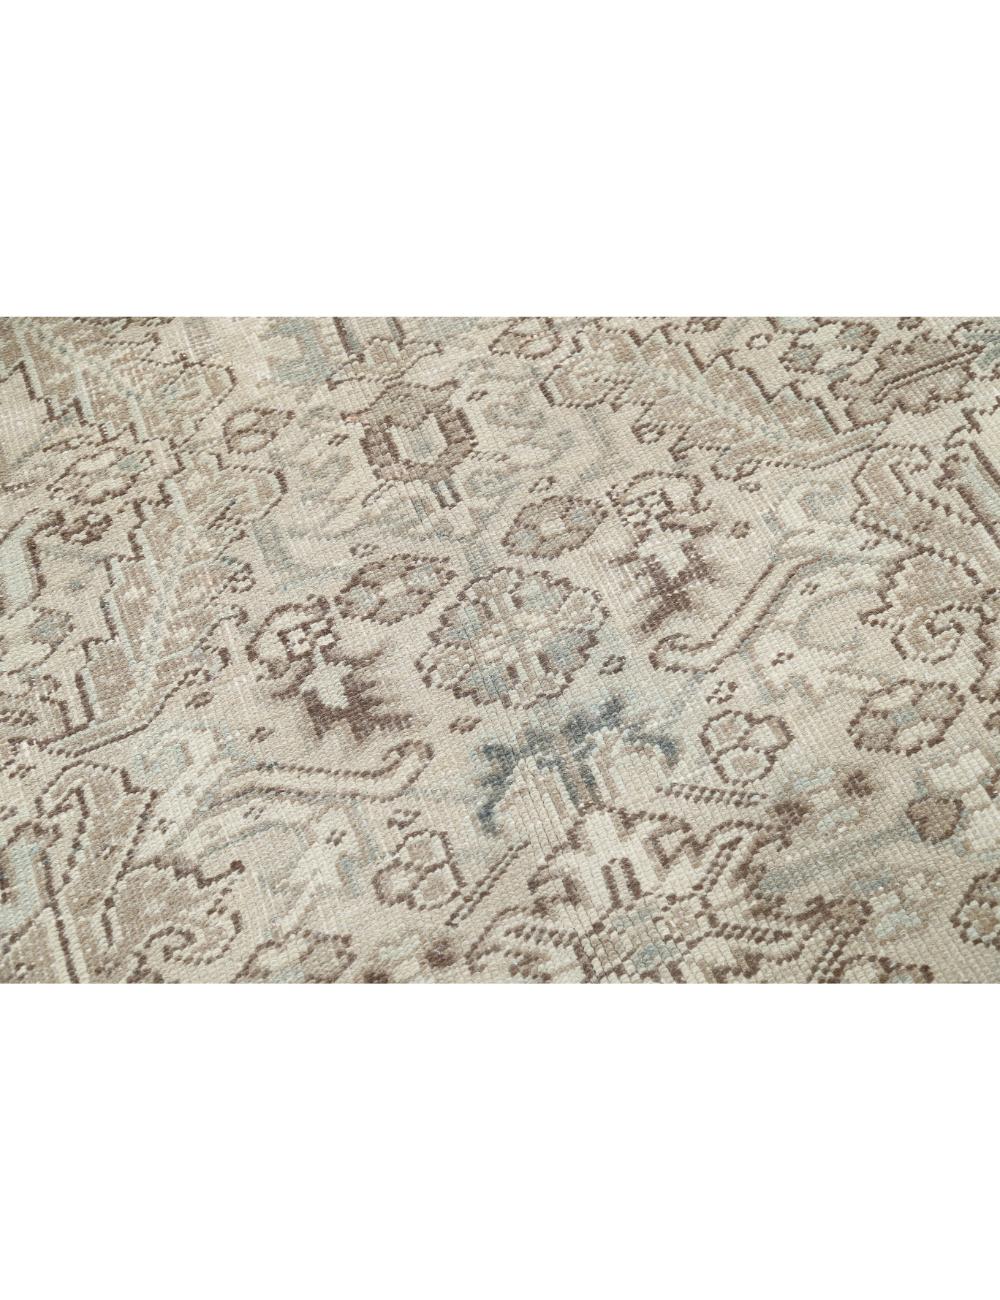 Hand Knotted Persian Heriz Wool Rug - 7'0'' x 8'11'' Arteverk Arteverk Rugs